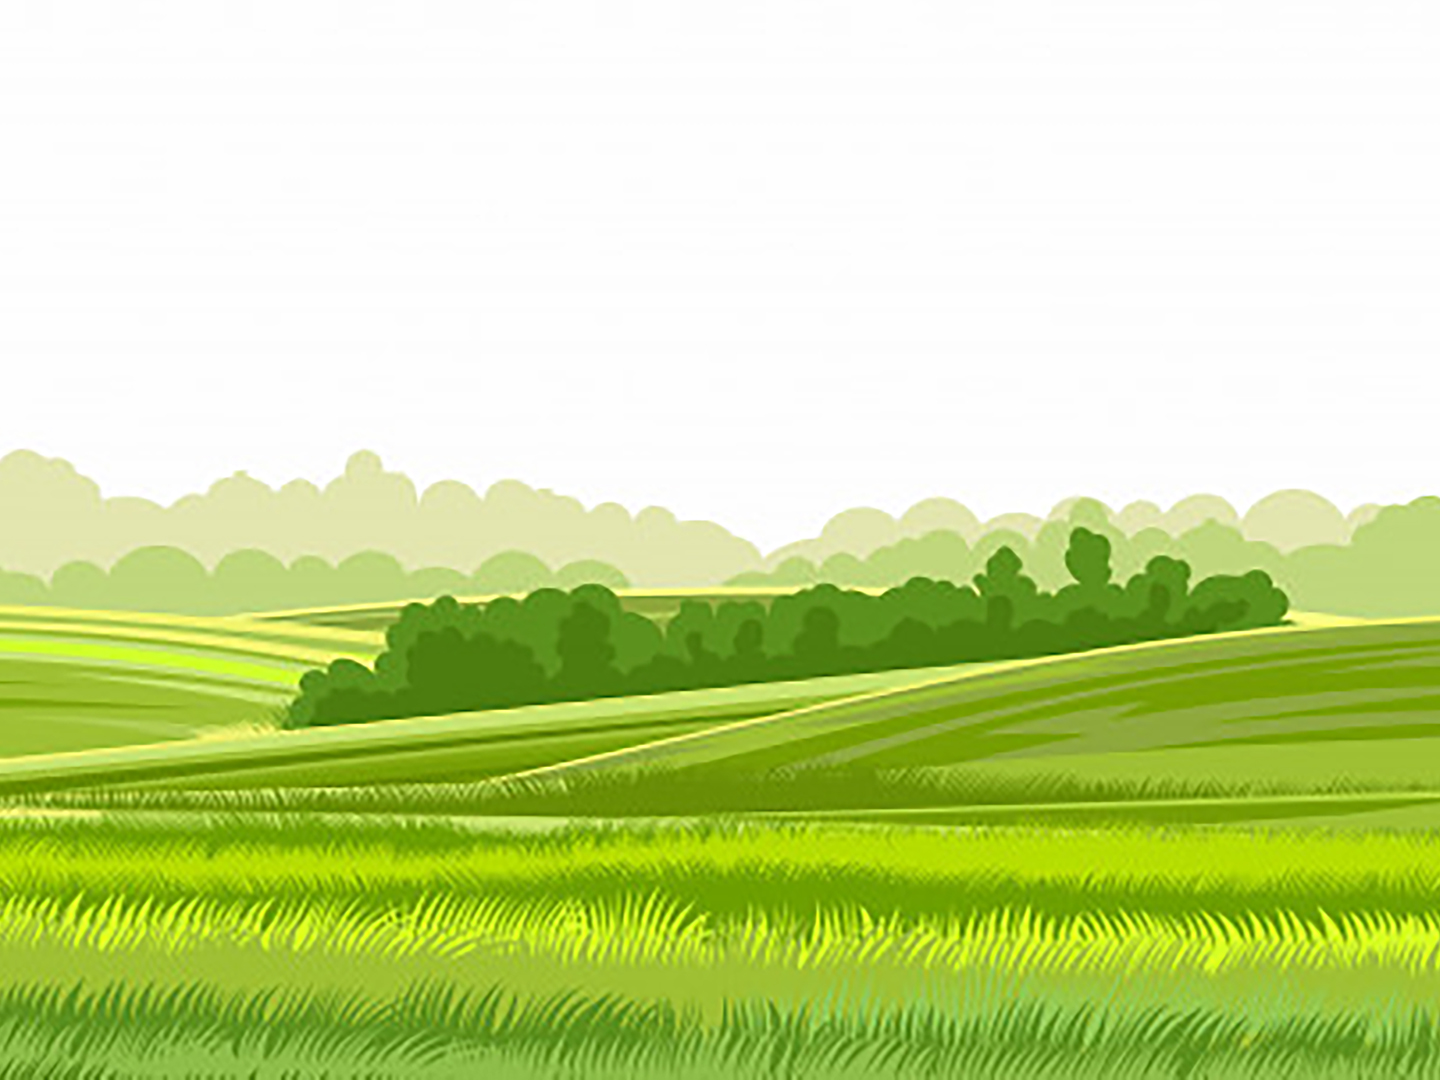 Comissão de Agronegócios da OAB SP se manifesta sobre PL 2.963/19, que facilita aquisição de terras rurais por estrangeiros